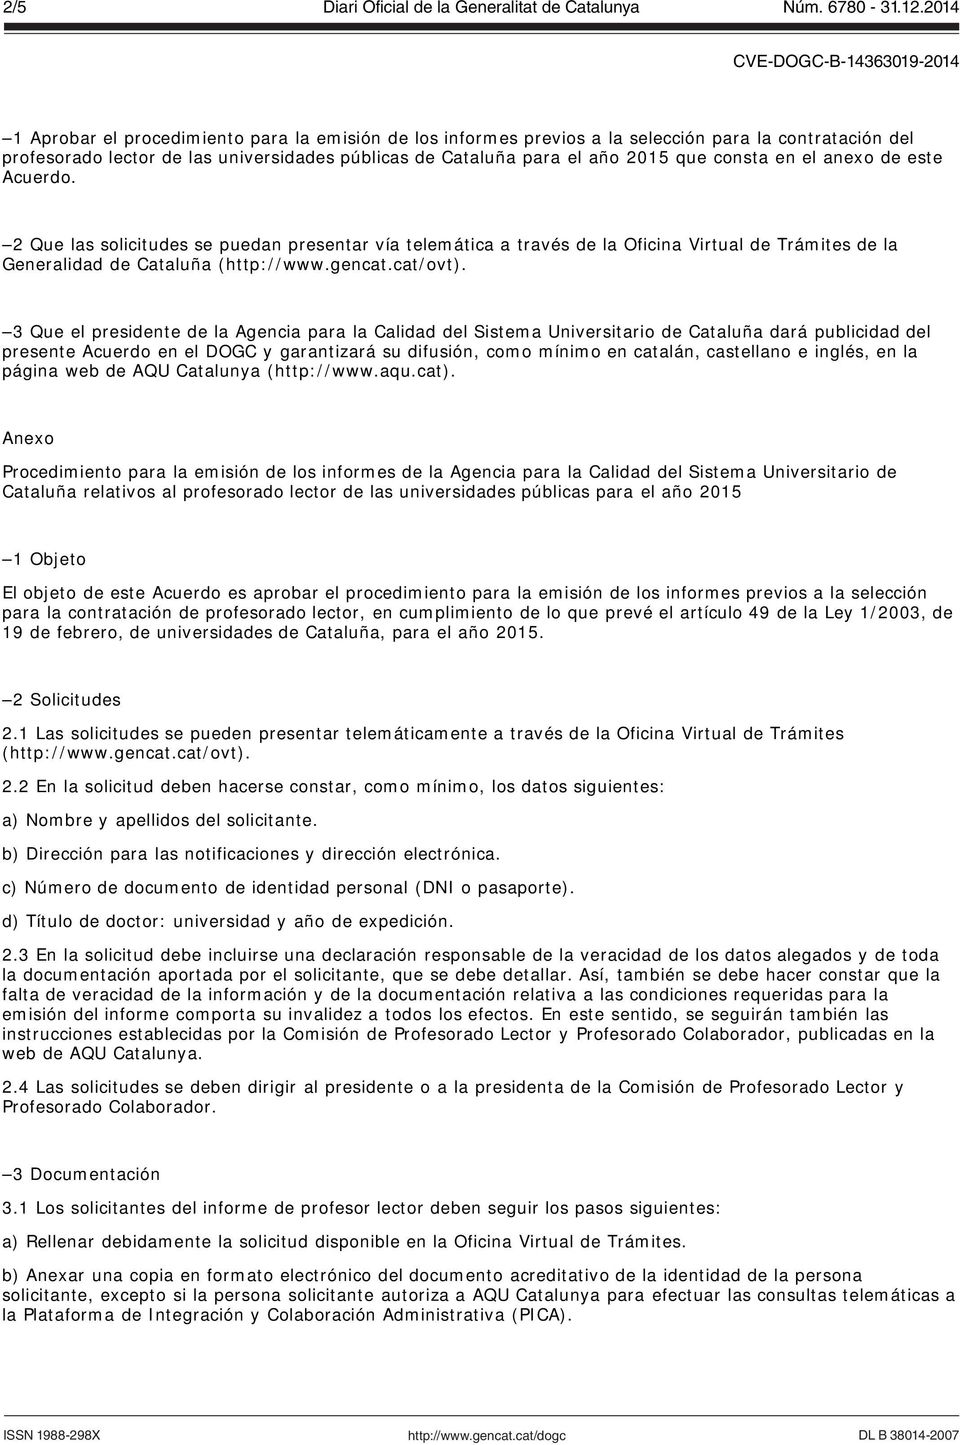 2 Que las solicitudes se puedan presentar vía telemática a través de la Oficina Virtual de Trámites de la Generalidad de Cataluña (http://www.gencat.cat/ovt).